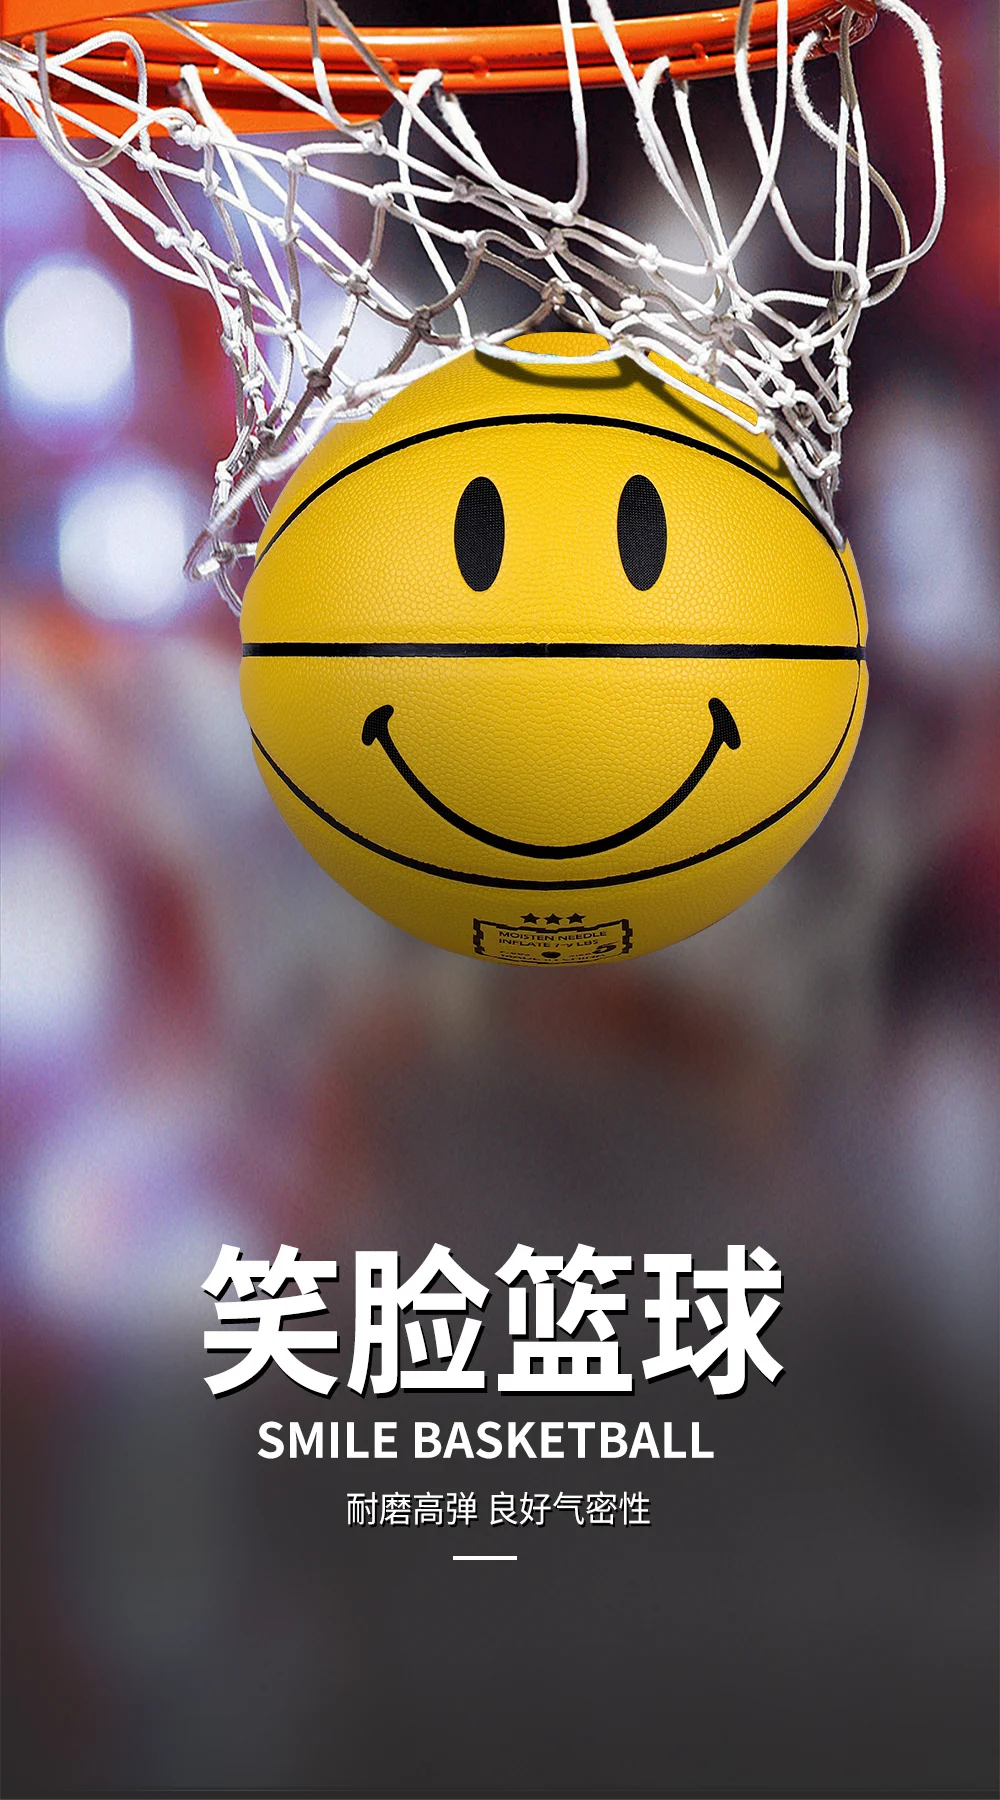 Yellow smile basketball